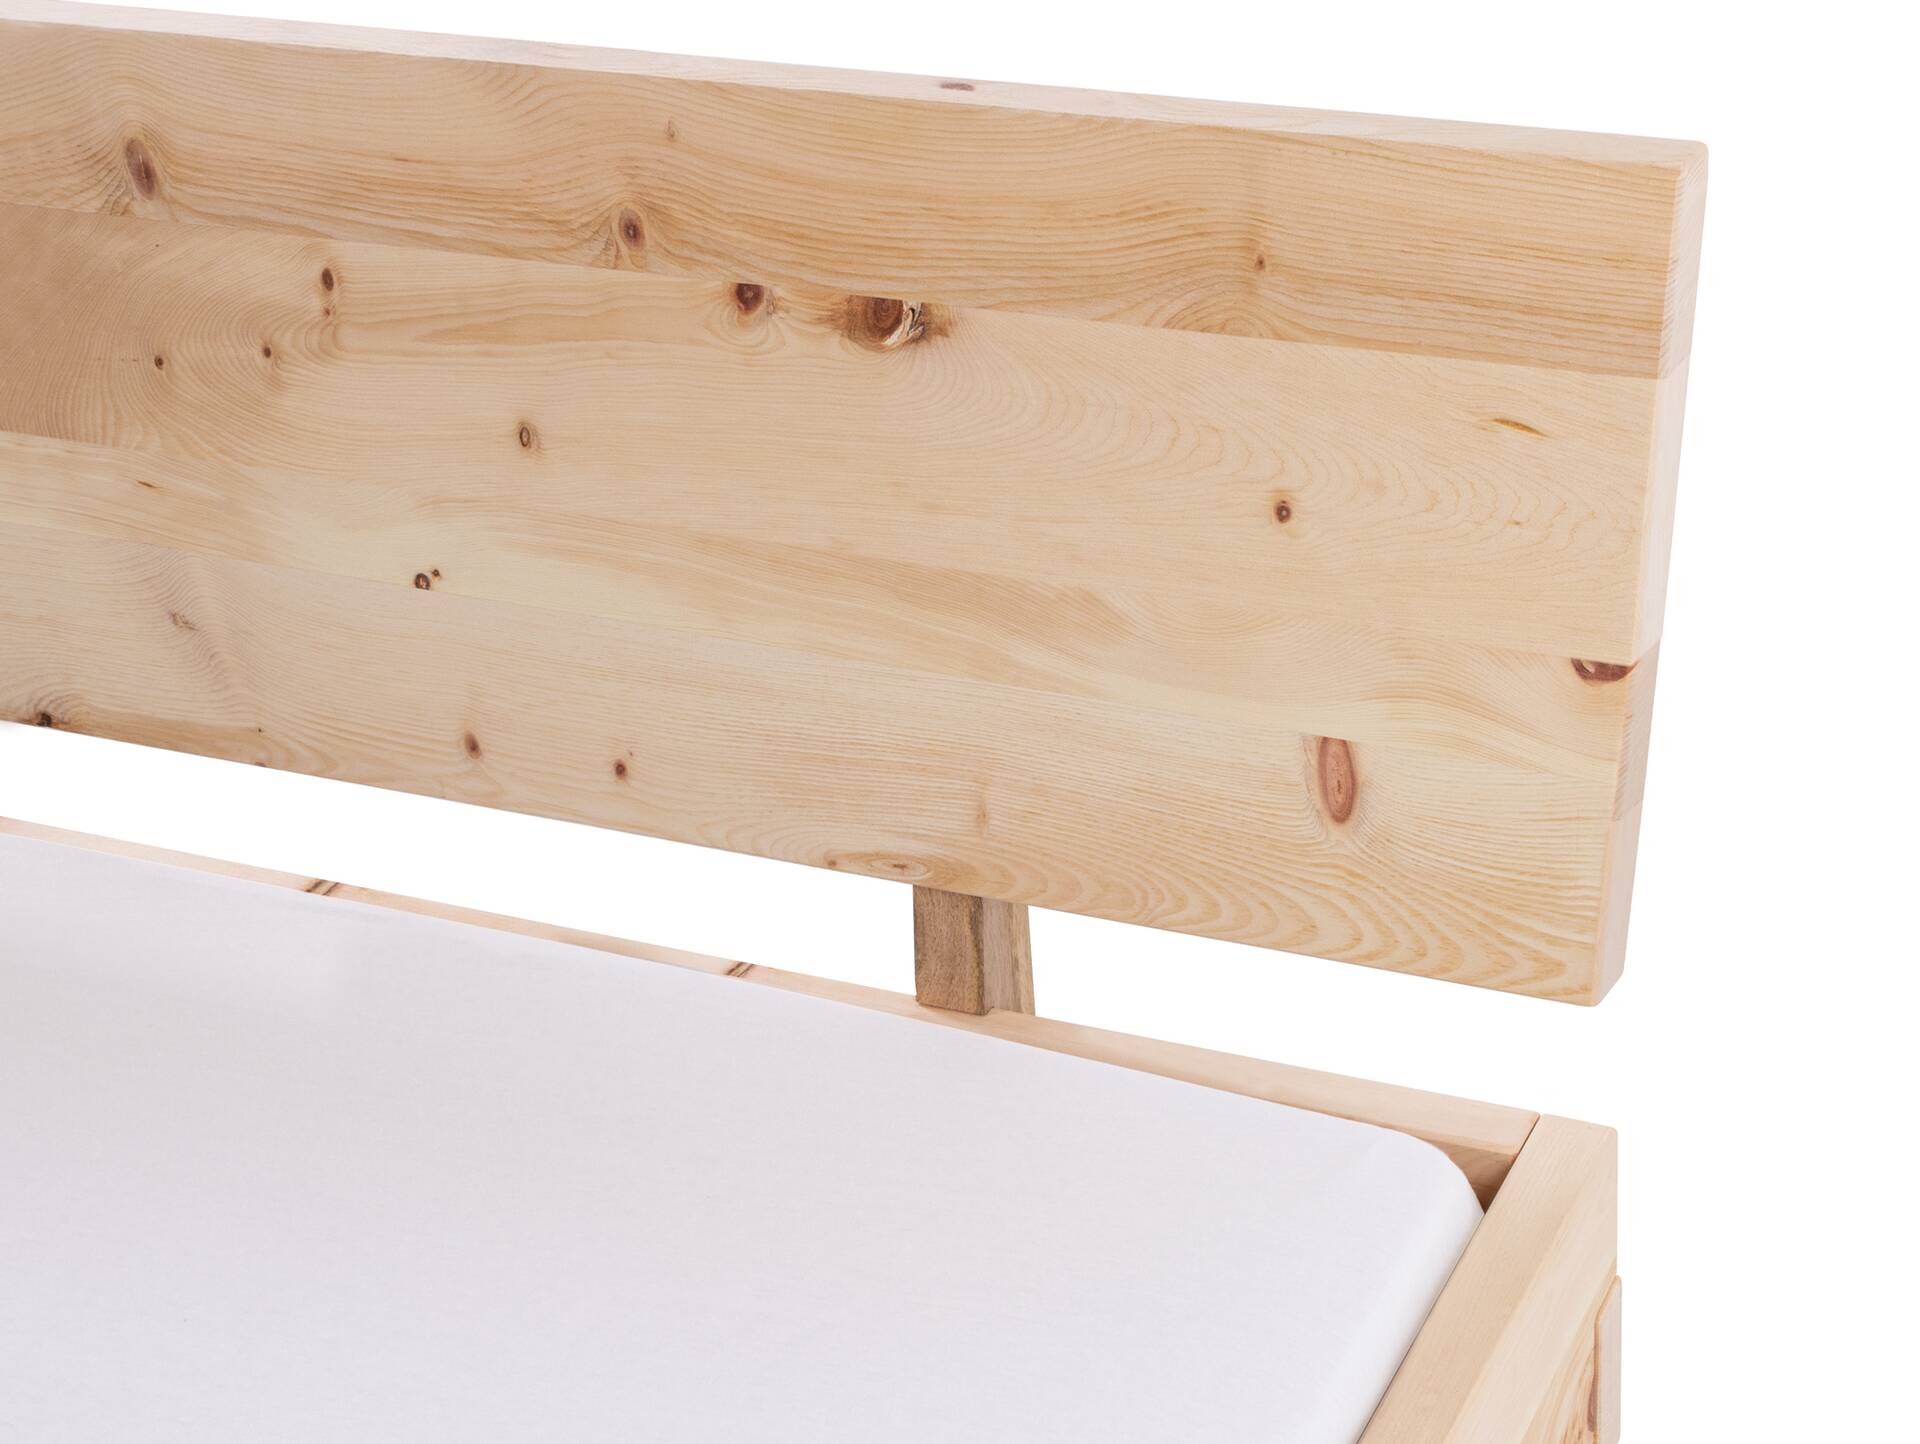 ZARUBA Zirbenbett mit Holz-Kufen/Holzkopfteil, Material Massivholz, Zirbe unbehandelt, mit/ohne Kopfteil 90 x 220 cm | mit Kopfteil